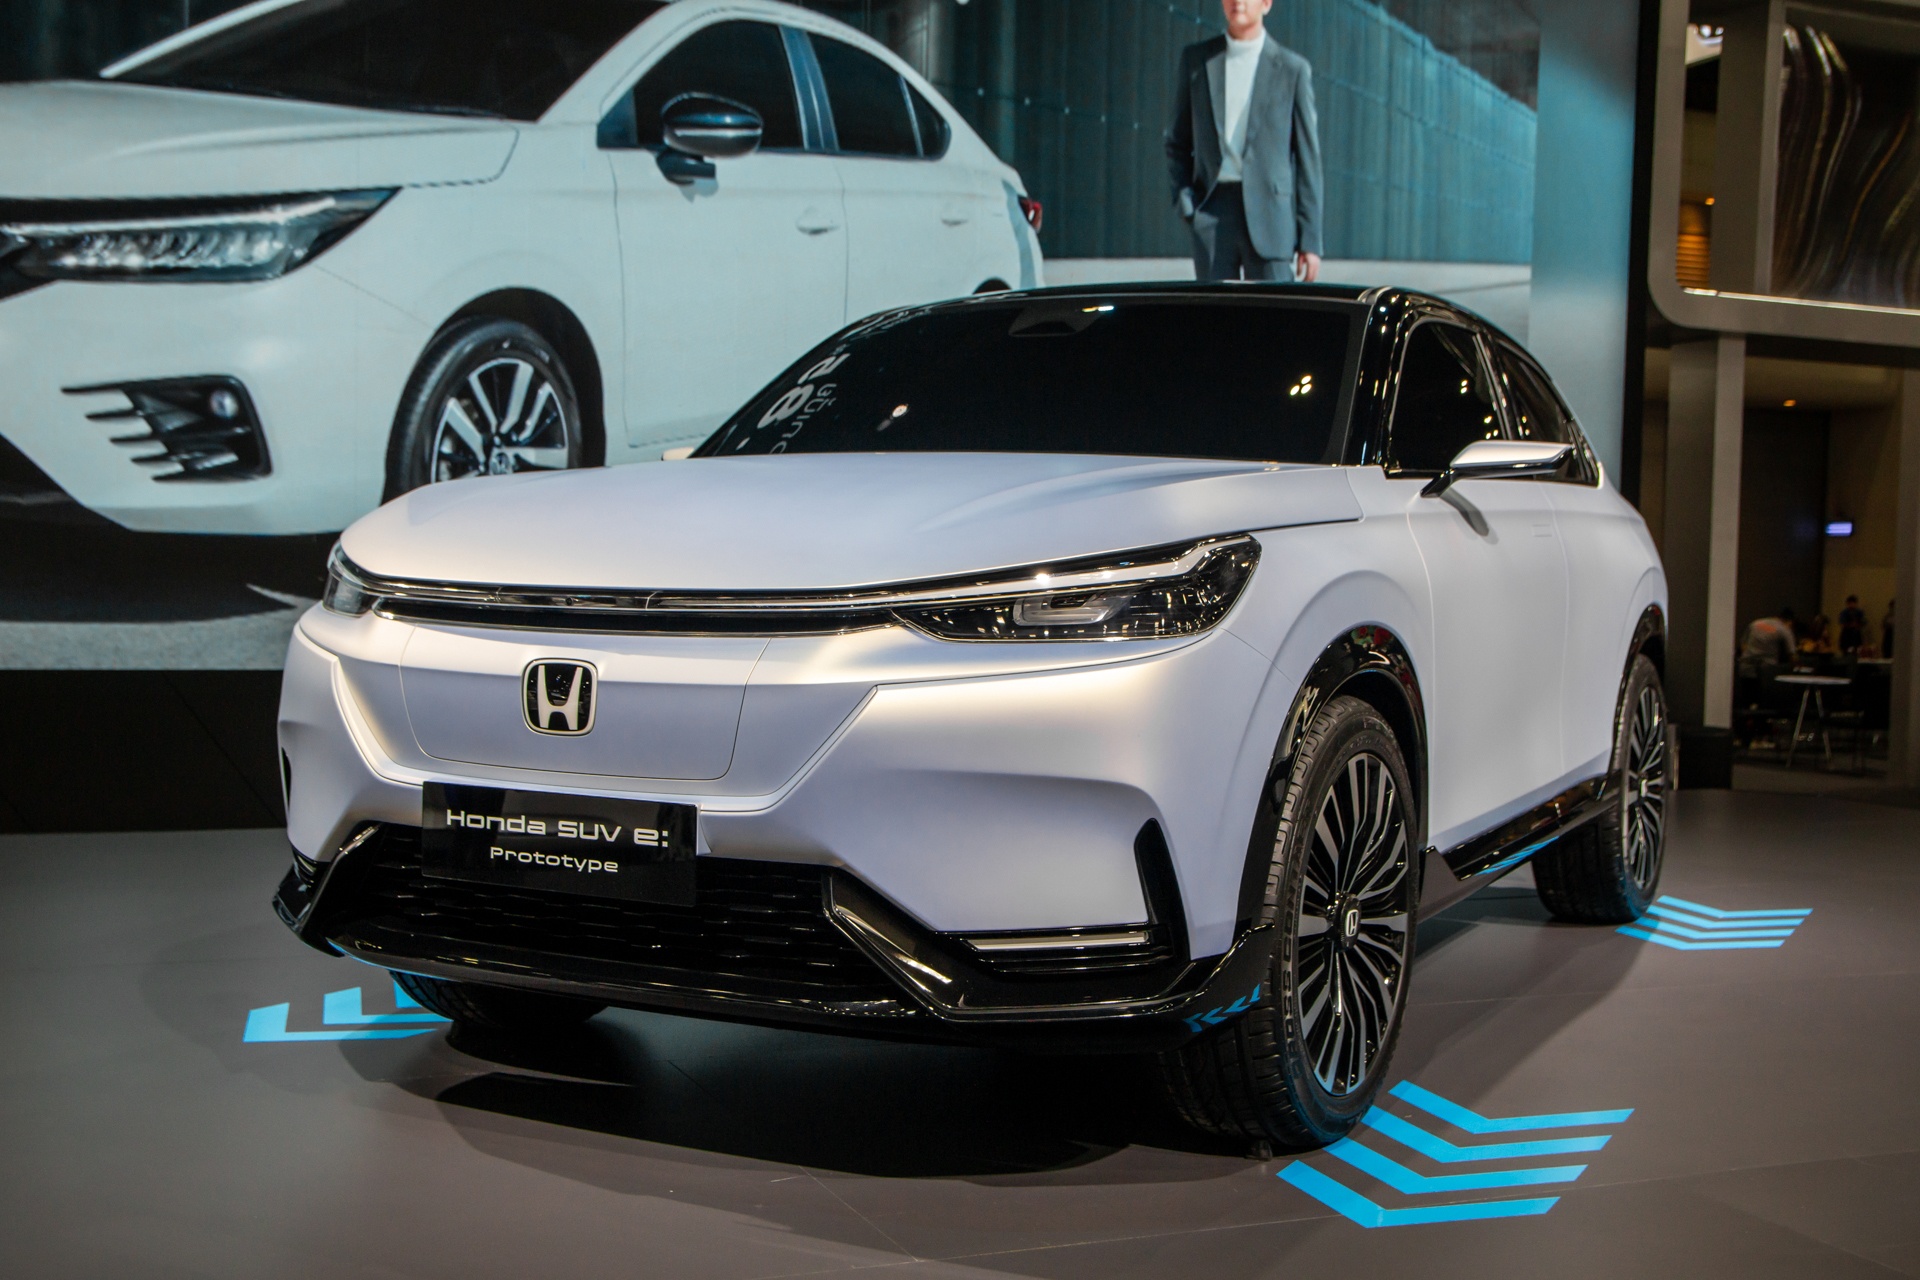 Honda SUV e:Prototype lần đầu được ra mắt tại Đông Nam Á - ảnh 1